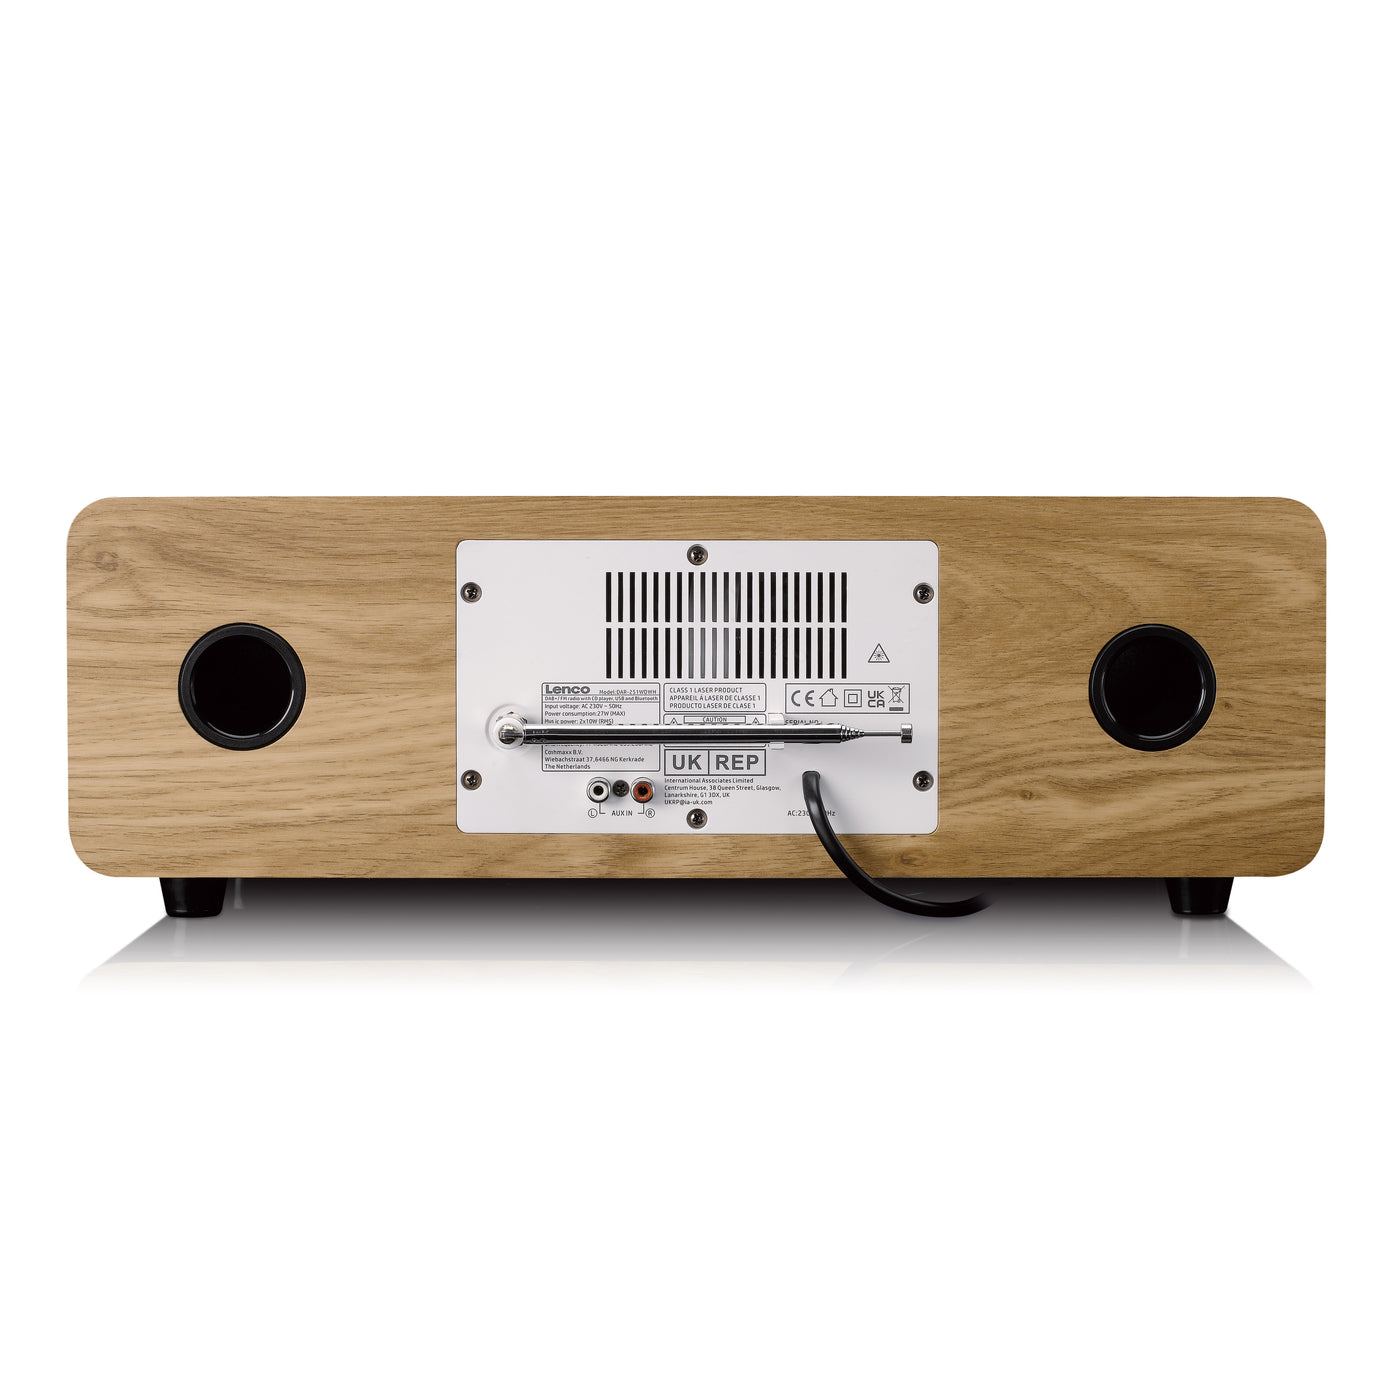 LENCO DAR-251WDWH - Stereo DAB+/FM radio, CD, USB, Bluetooth®, QI en afstandsbediening - Hout/Wit